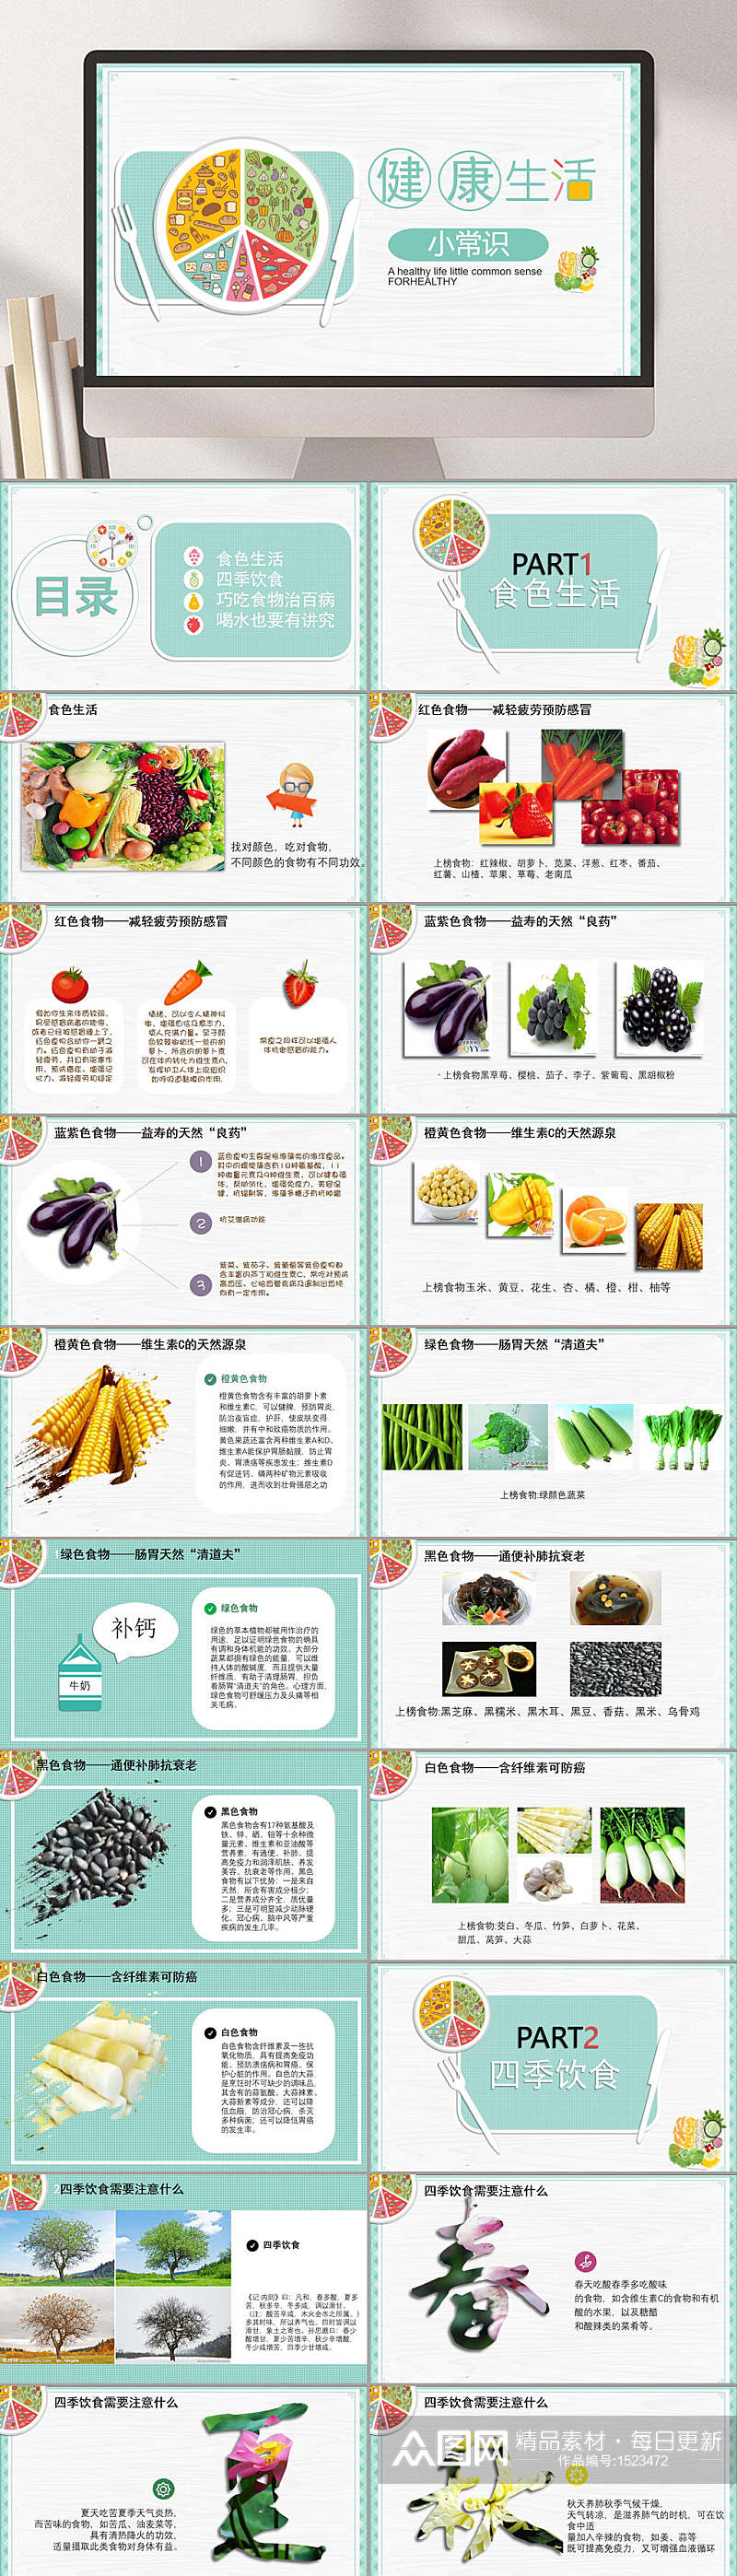 水果蔬菜健康生活PPT模板素材